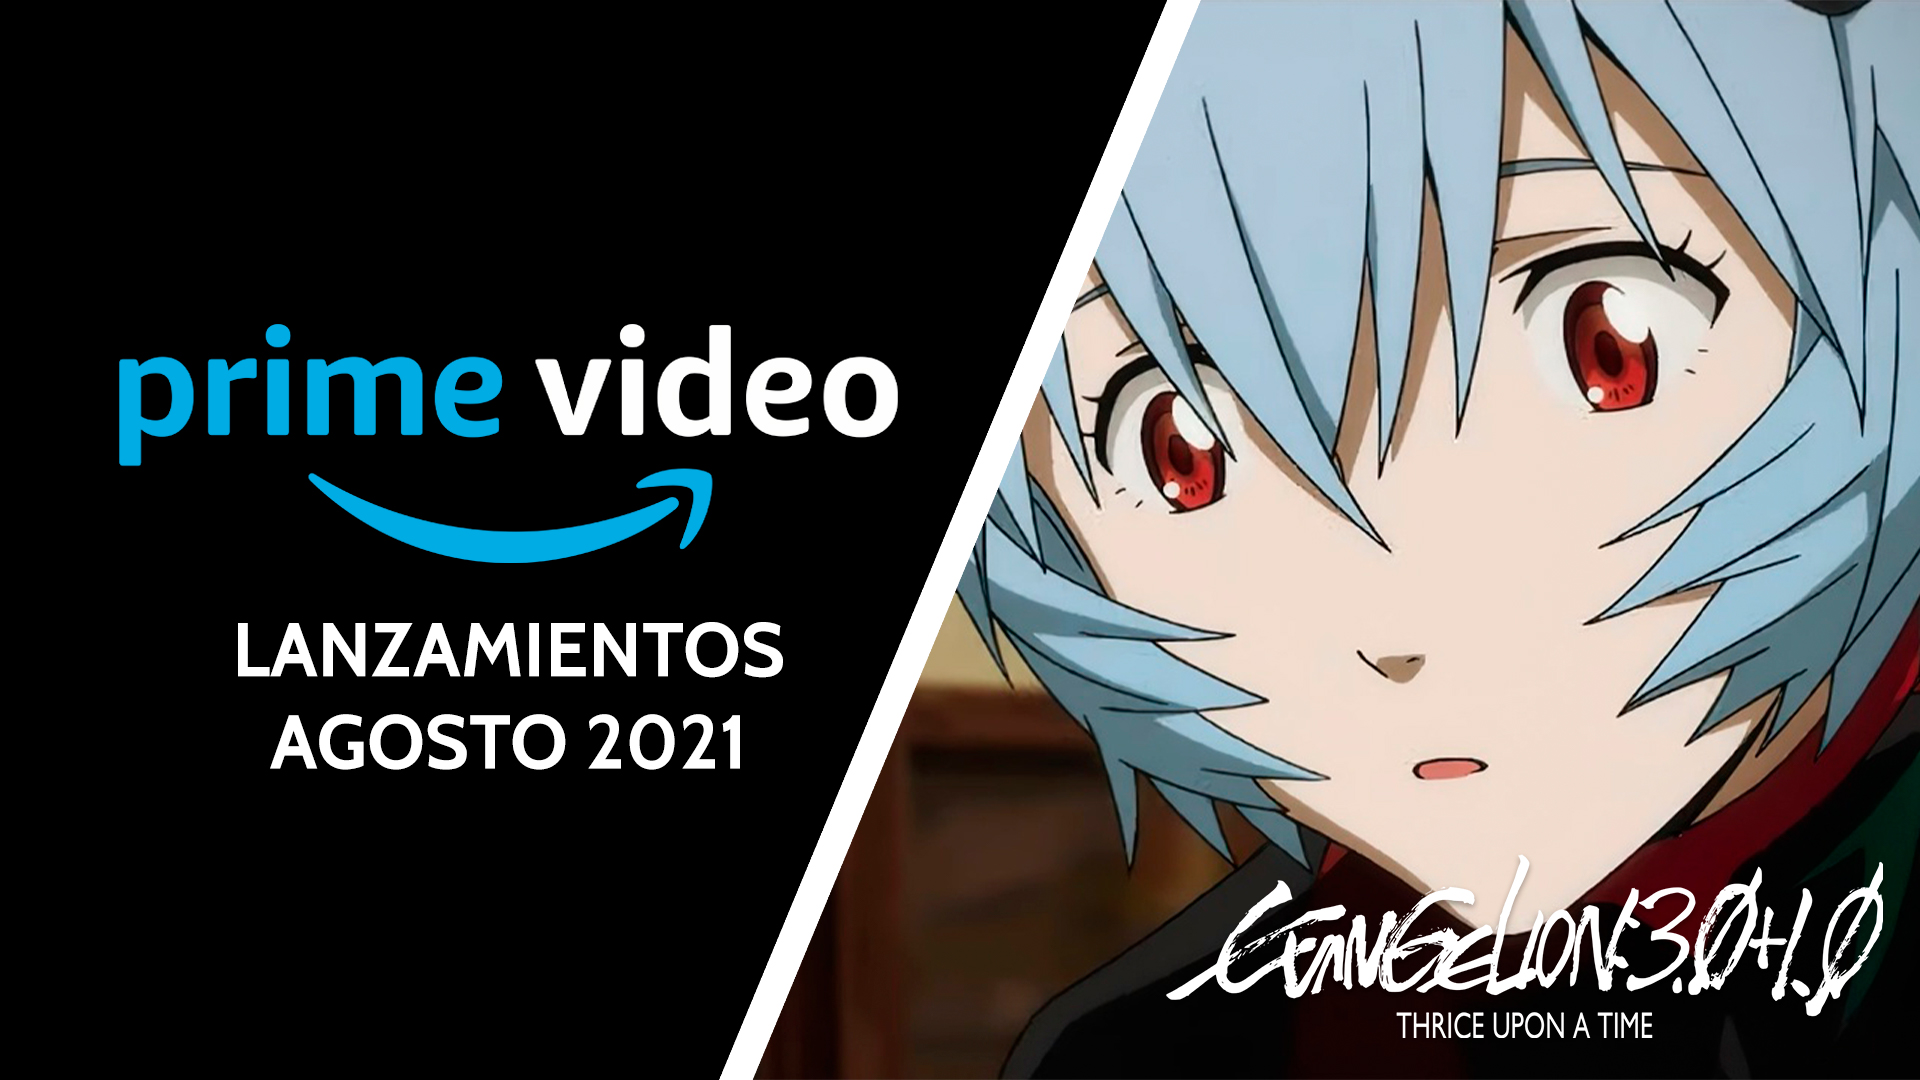 Evangelion Amazon Prime Video agosto 2021 ImpulsoGeek